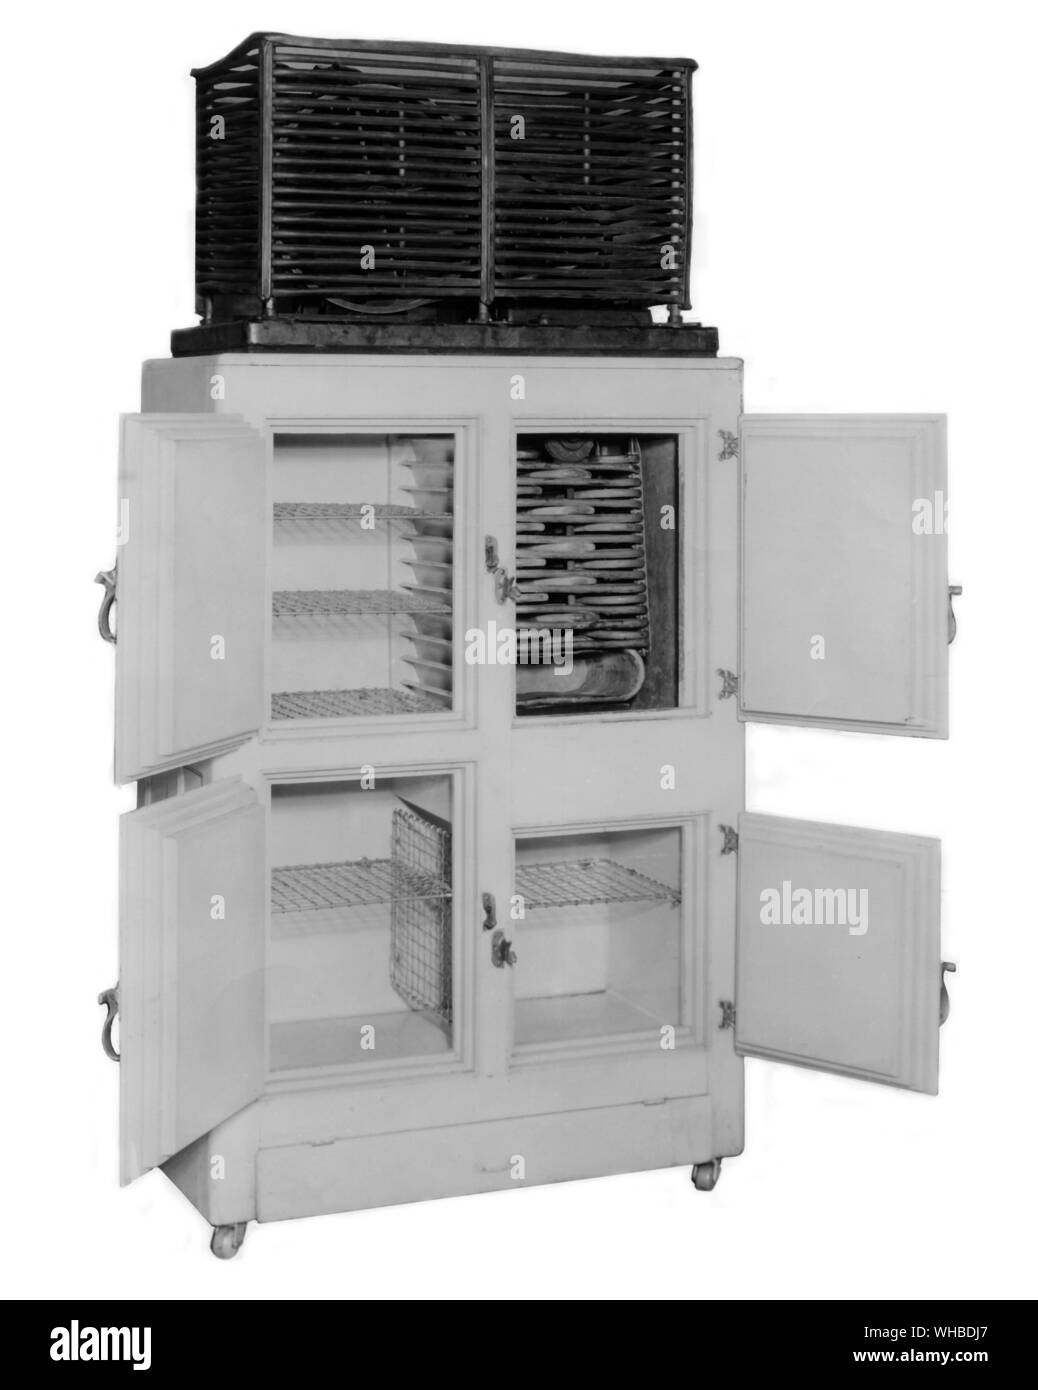 Die erste erfolgreiche Luft - mechanische Kühlschrank, die Türen des Schrankes zu öffnen und eine Vorderansicht der frühesten Modell Kühlschlange abgekühlt. Dieser Kühlschrank wurde 1913 entwickelt. Stockfoto